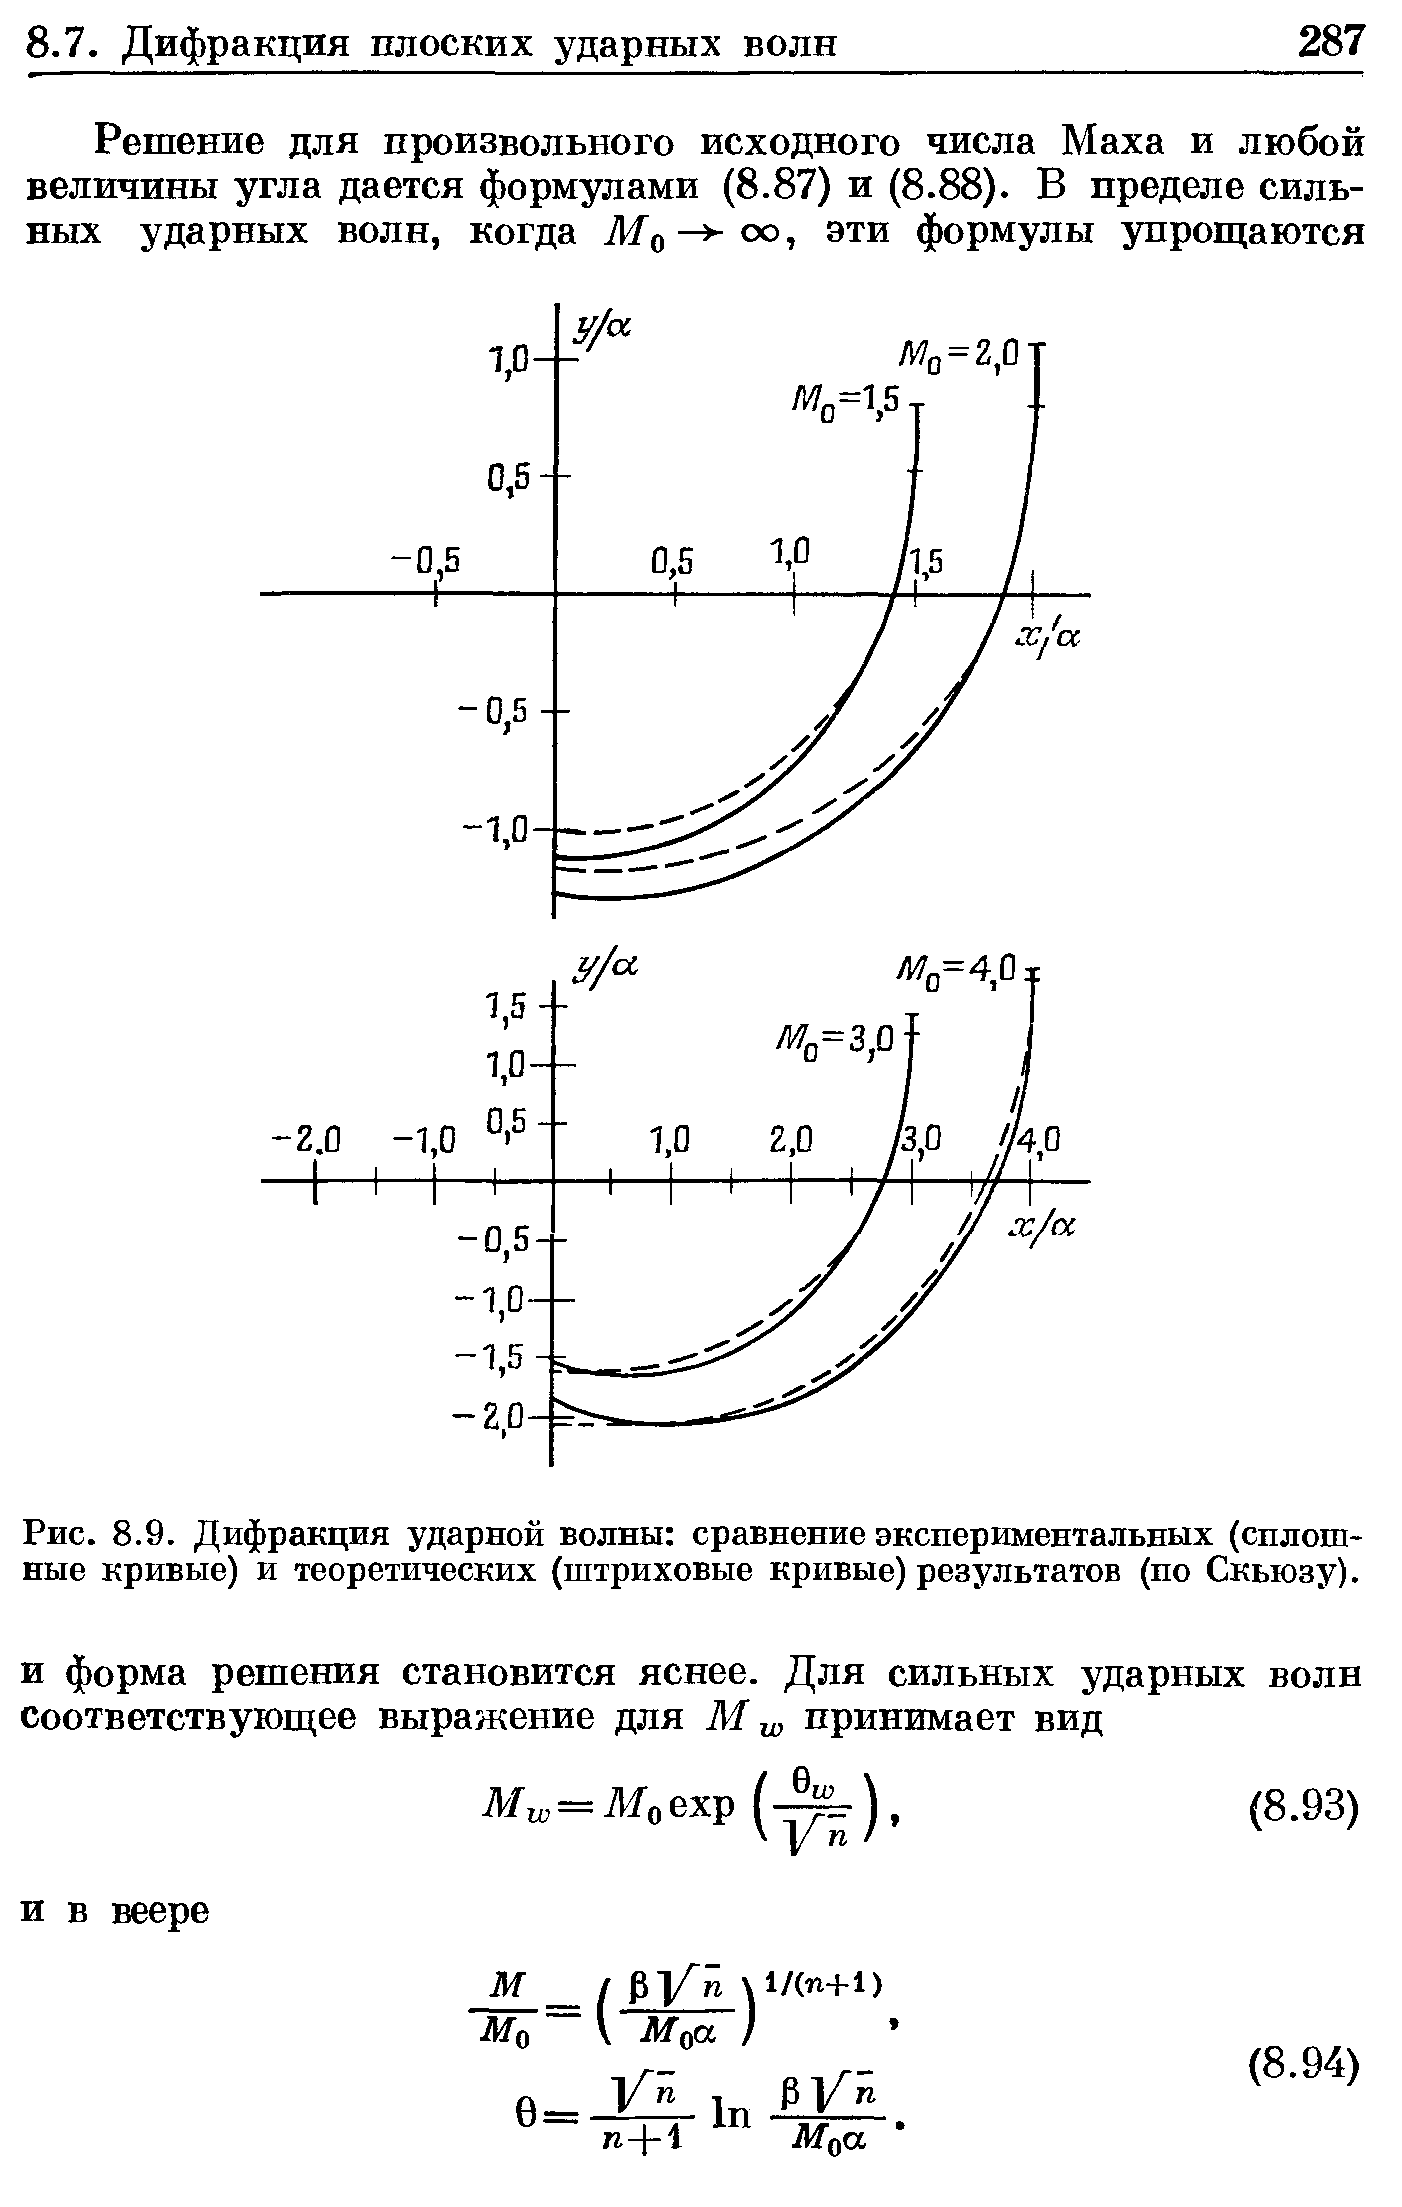 Рис. 8.9. Дифракция ударной волны сравнение экспериментальных (сплошные кривые) и теоретических (штриховые кривые) результатов (по Скьюзу).
